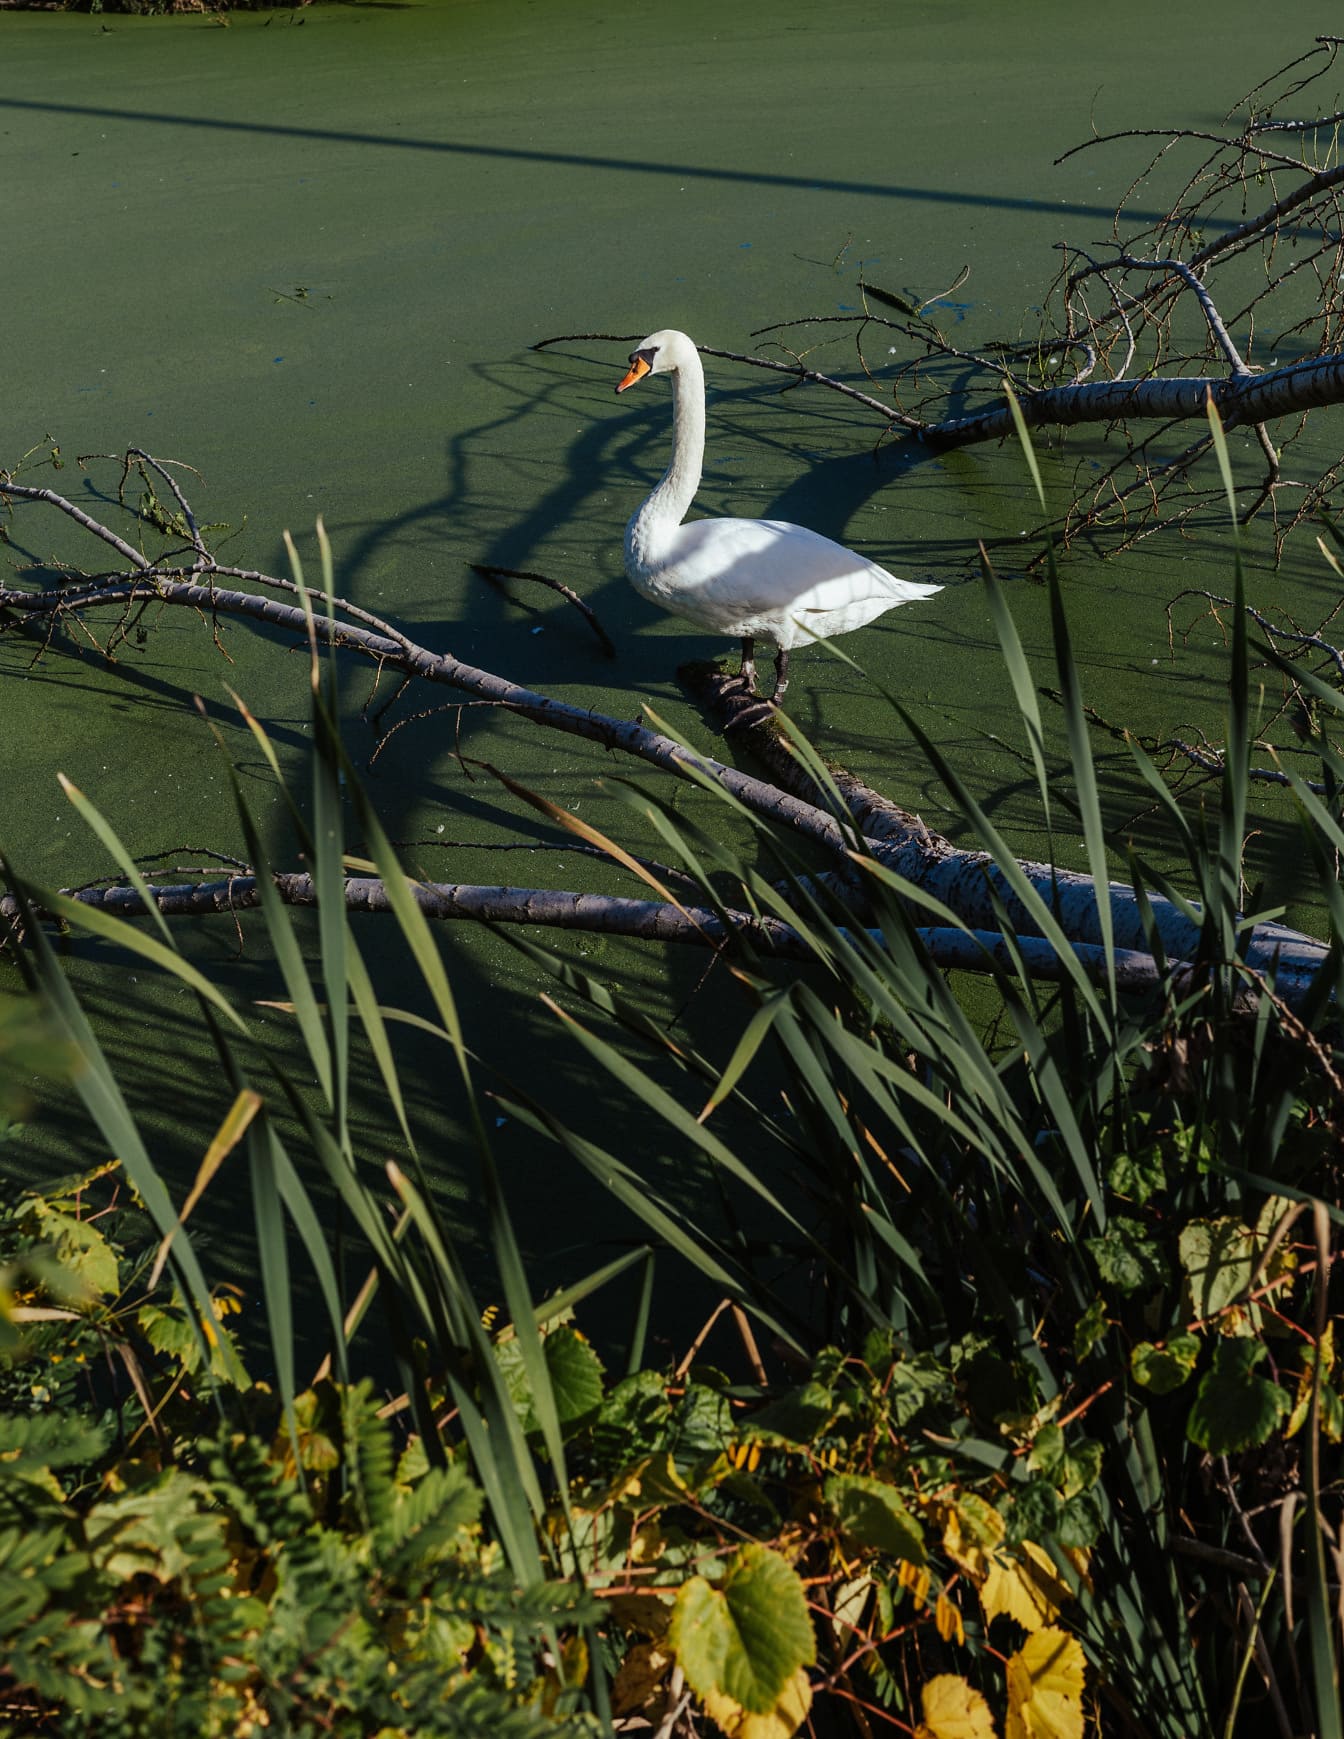 White mute swan (Cygnus olor) bird in swamp natural habitat